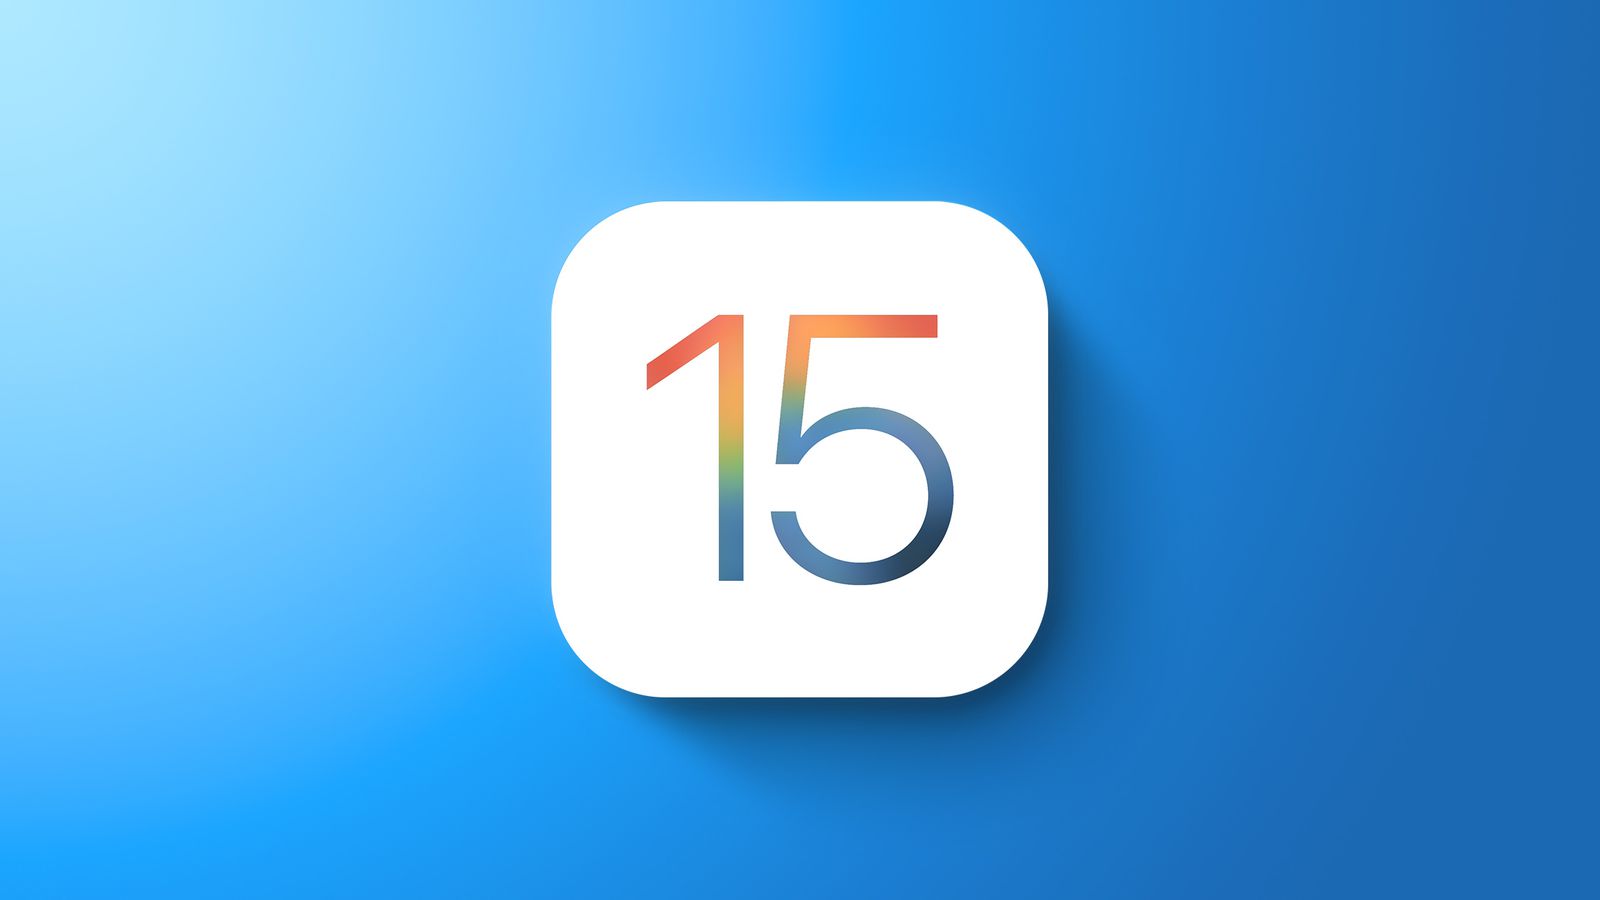 iOS 15 установлена почти на 60% устройств, ровно через 80 дней после выхода